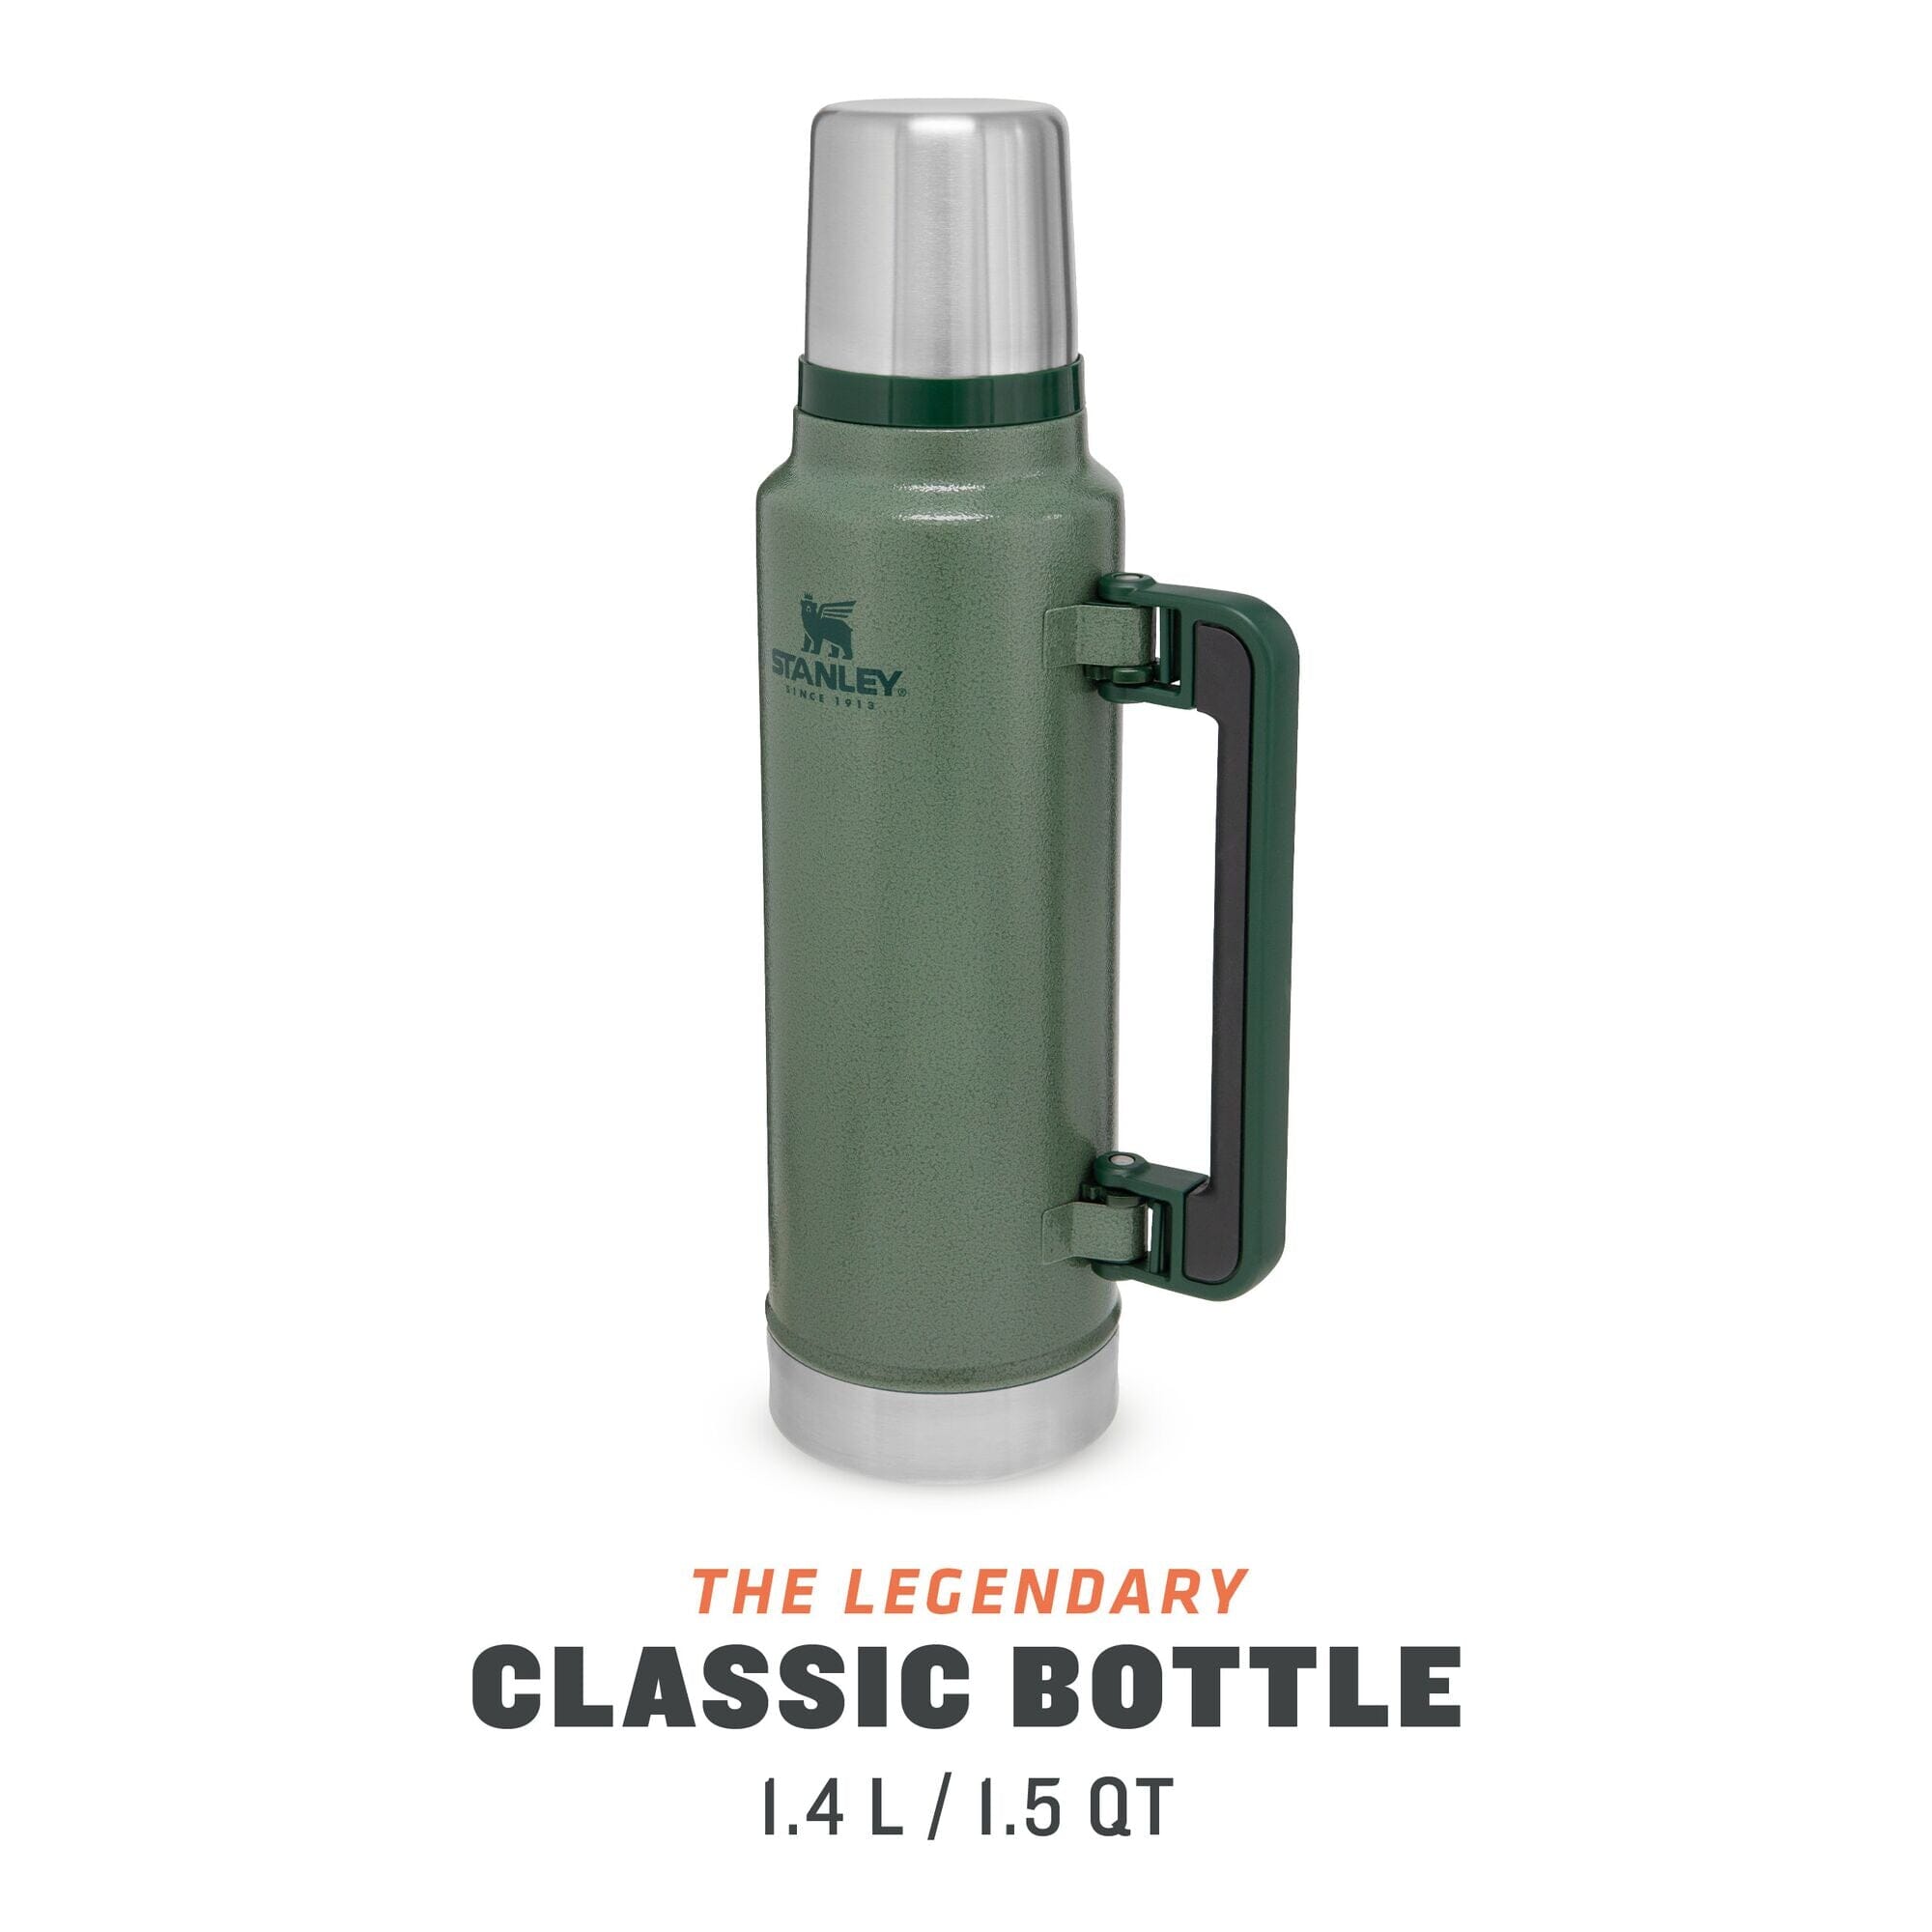 Se Stanley Legendary Classic Bottle termoflaske 1,4 ltr., grøn hos Godsejeren